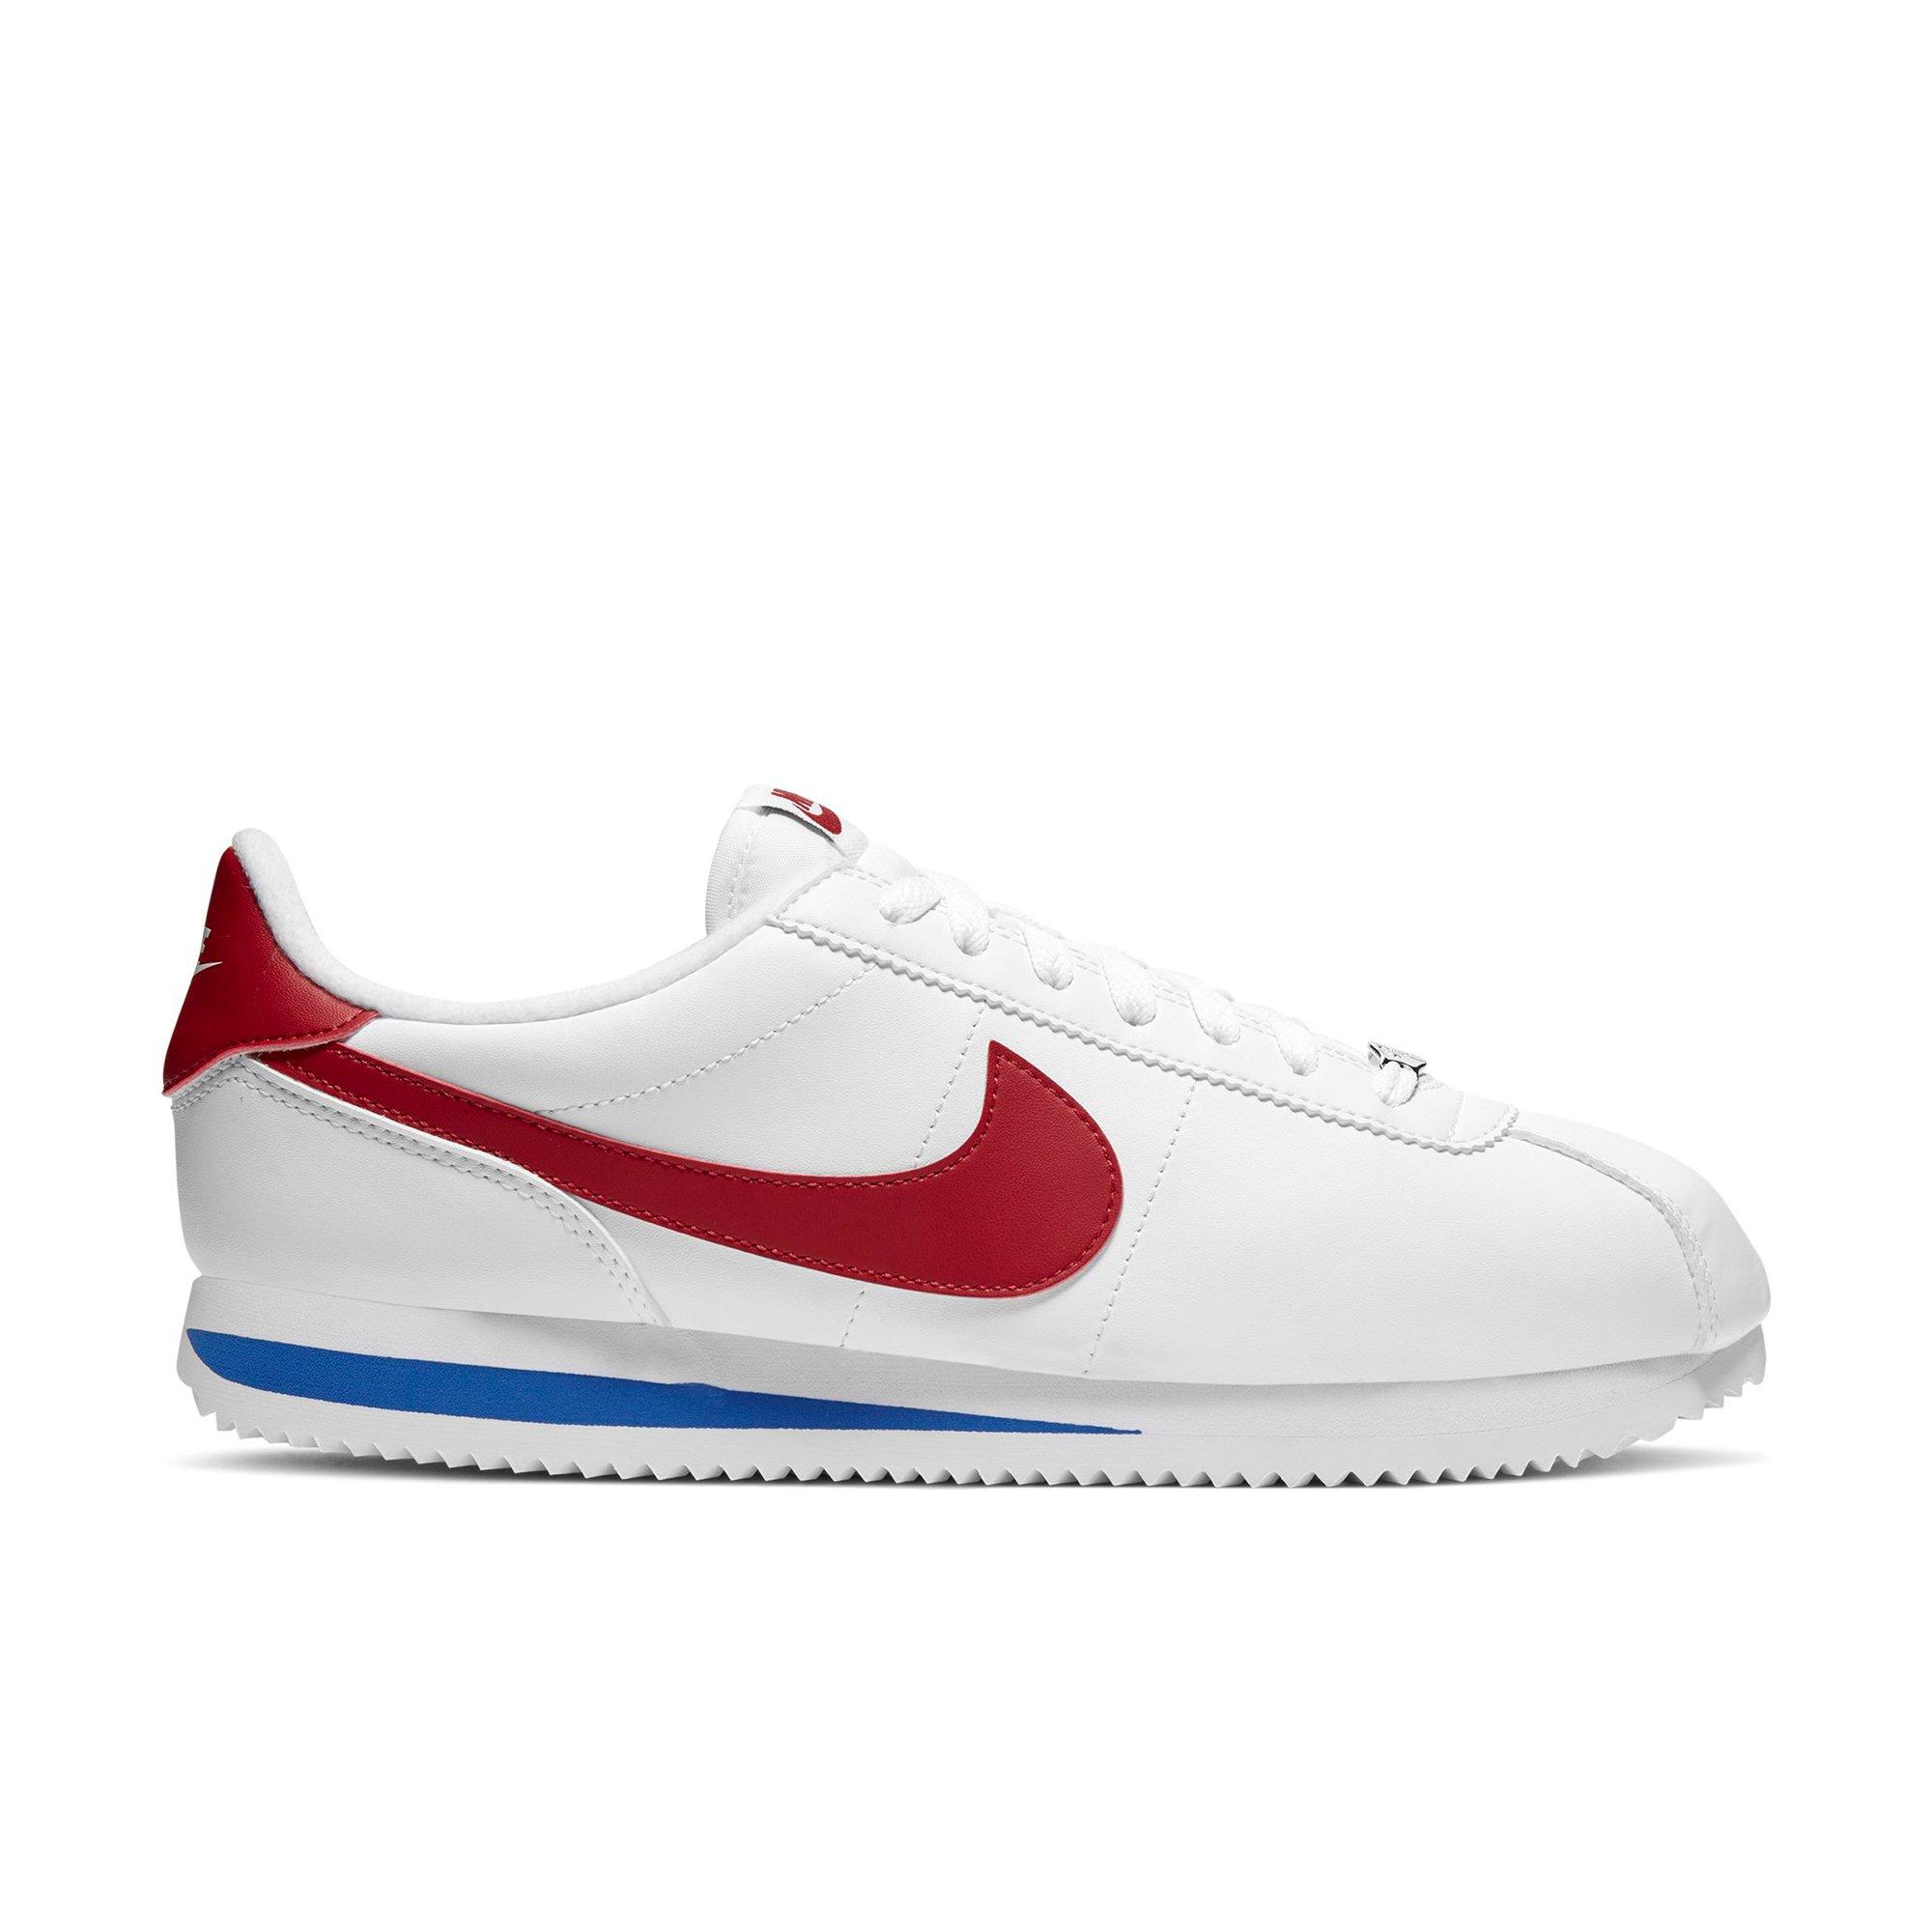 Cortez Basic "White/Red/Blue" Men's Running Shoe